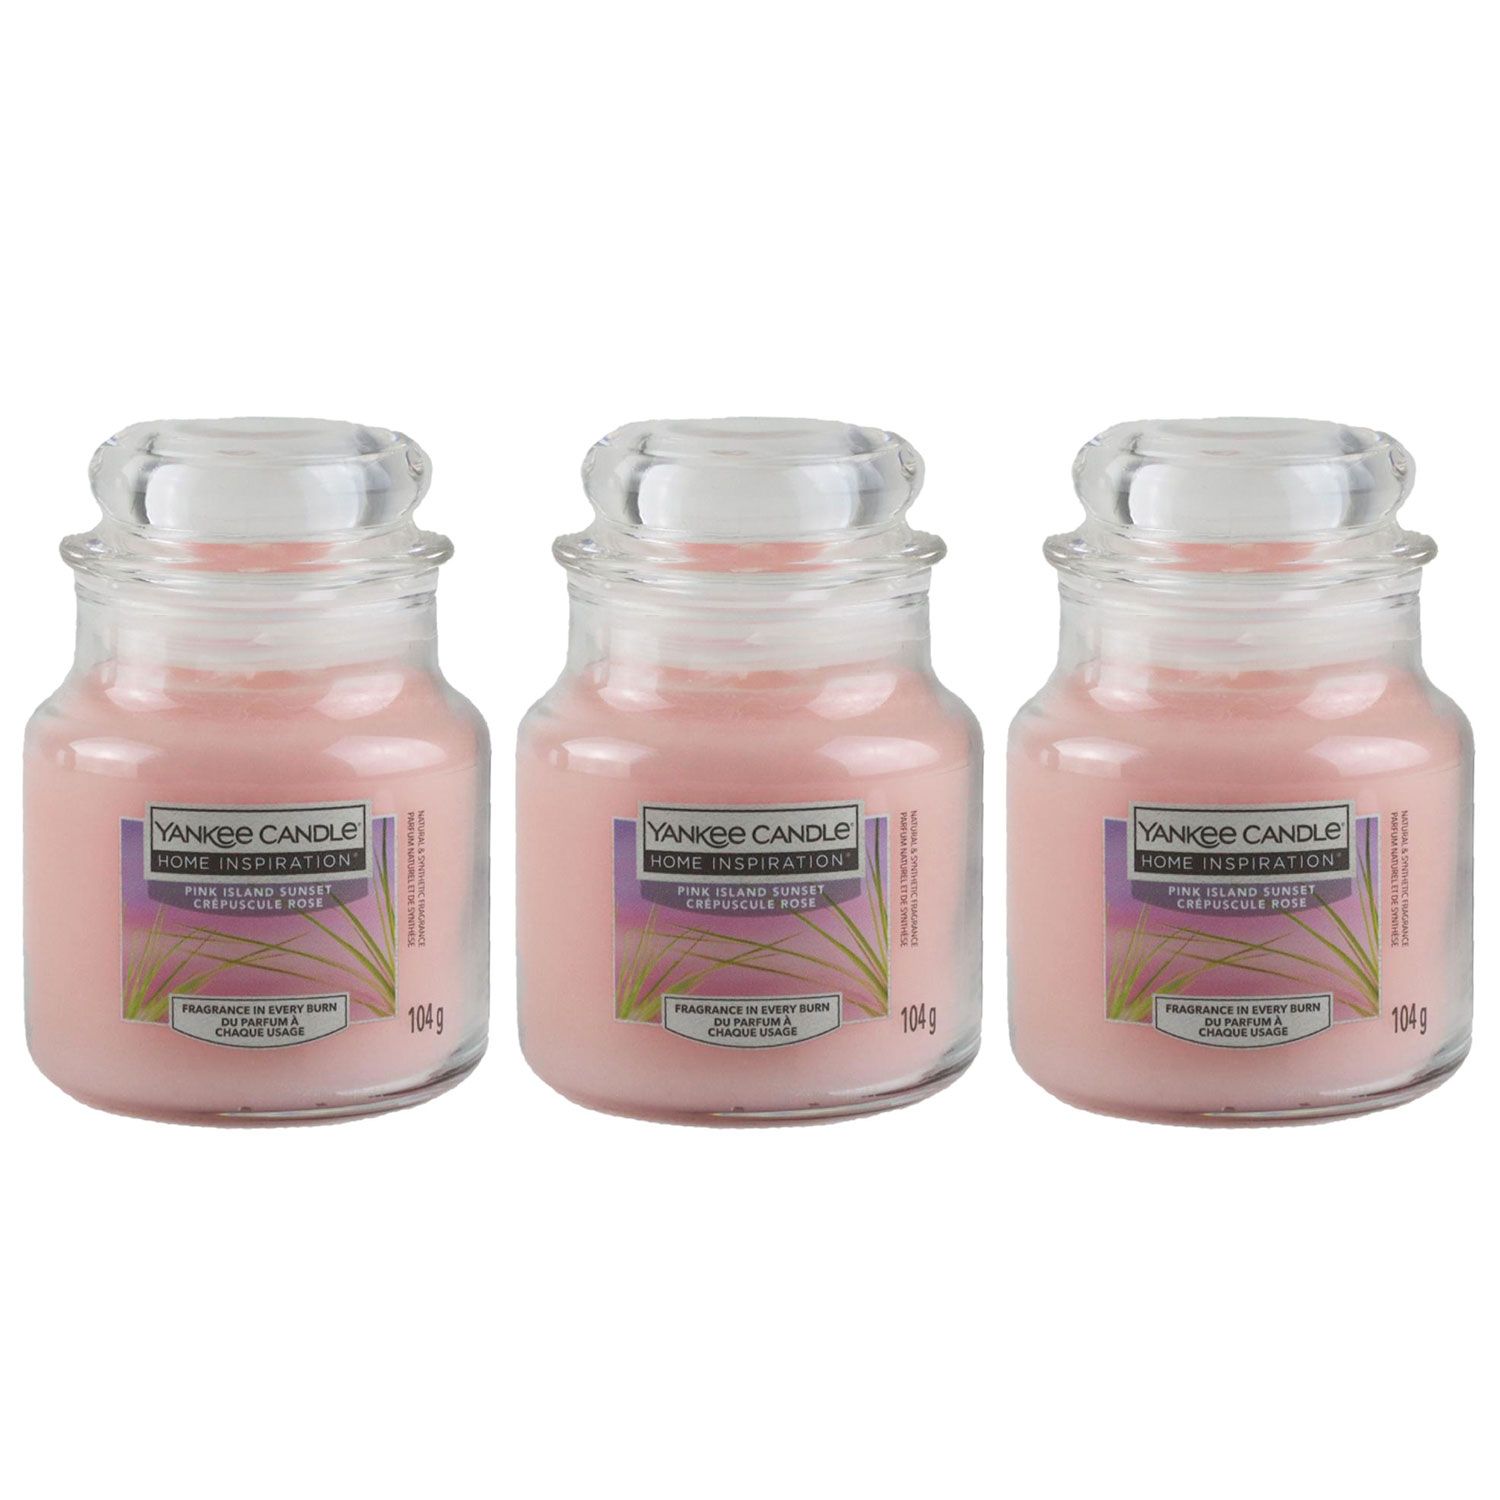 Yankee Candle Duftkerze Pink Island Sunset im Glas Jar 3 x 104 g bei Riemax